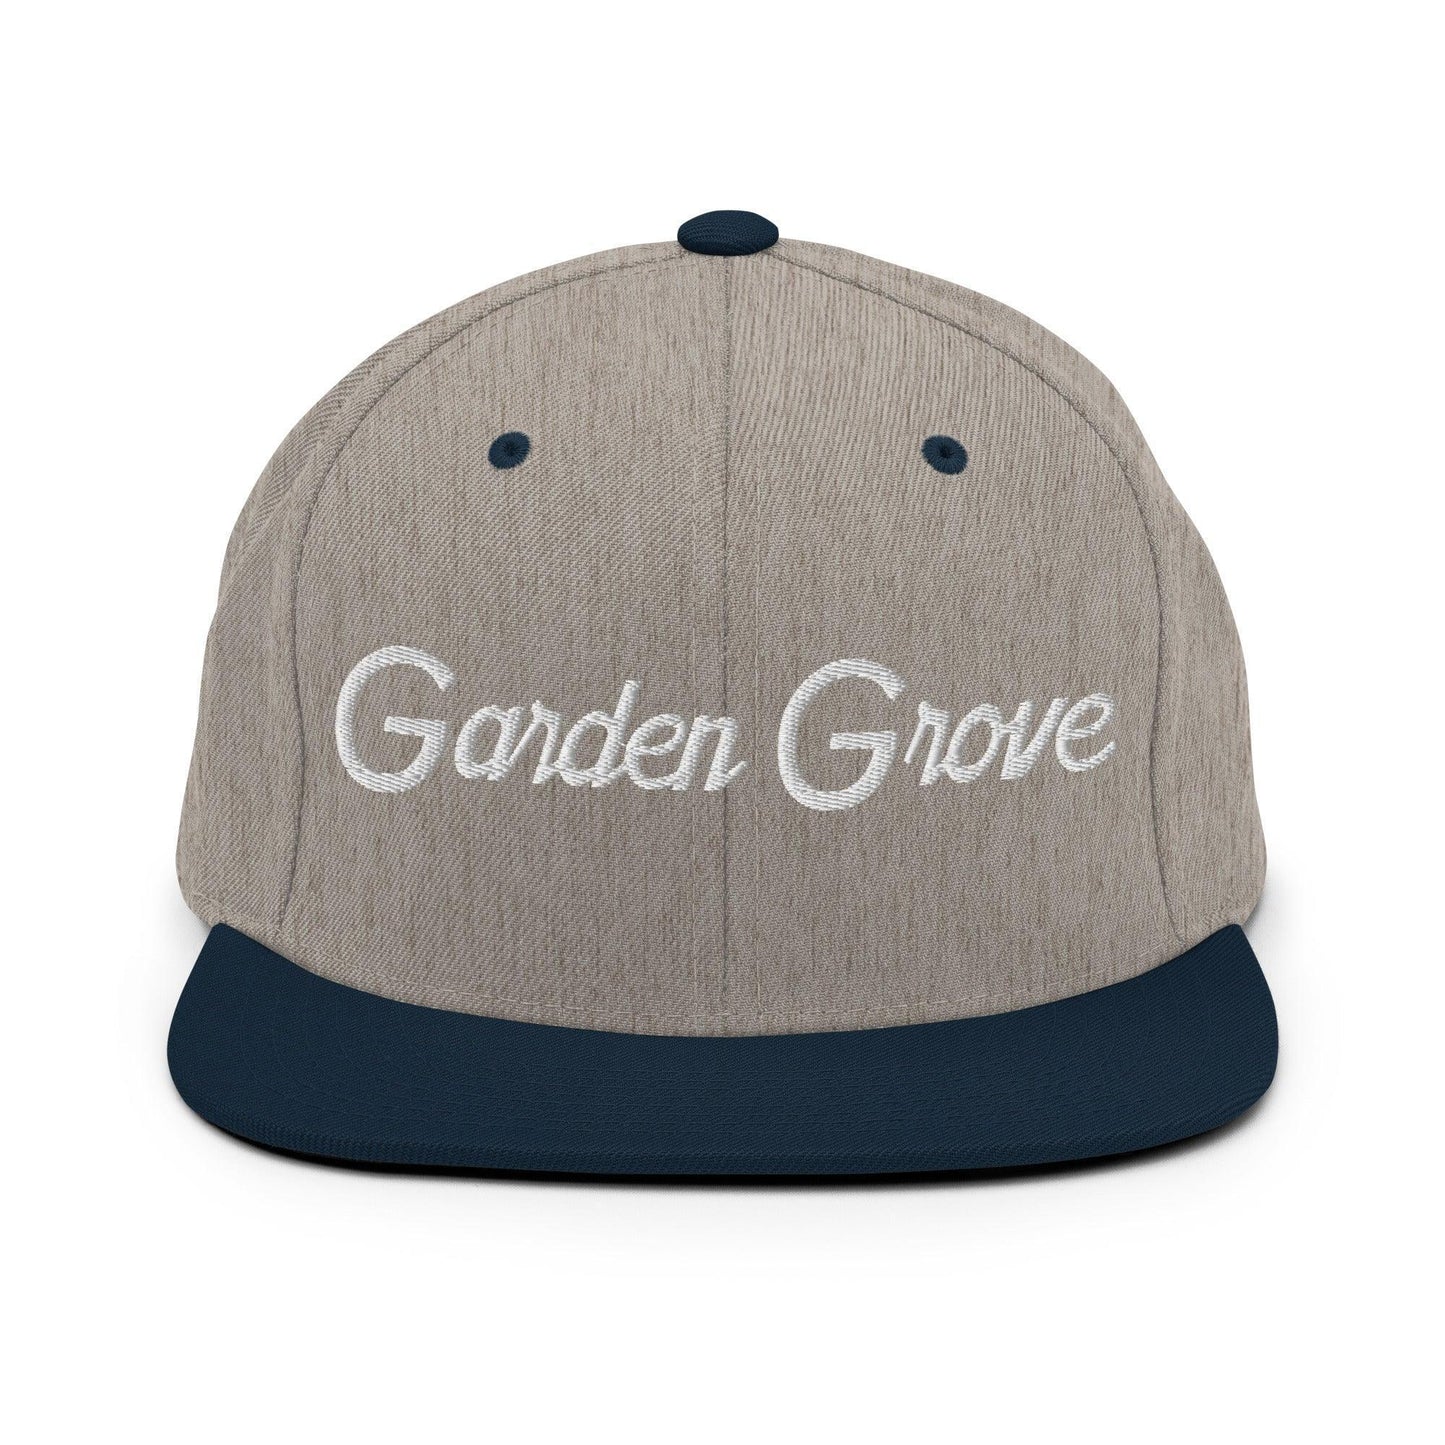 Garden Grove Script Snapback Hat Heather Grey Navy